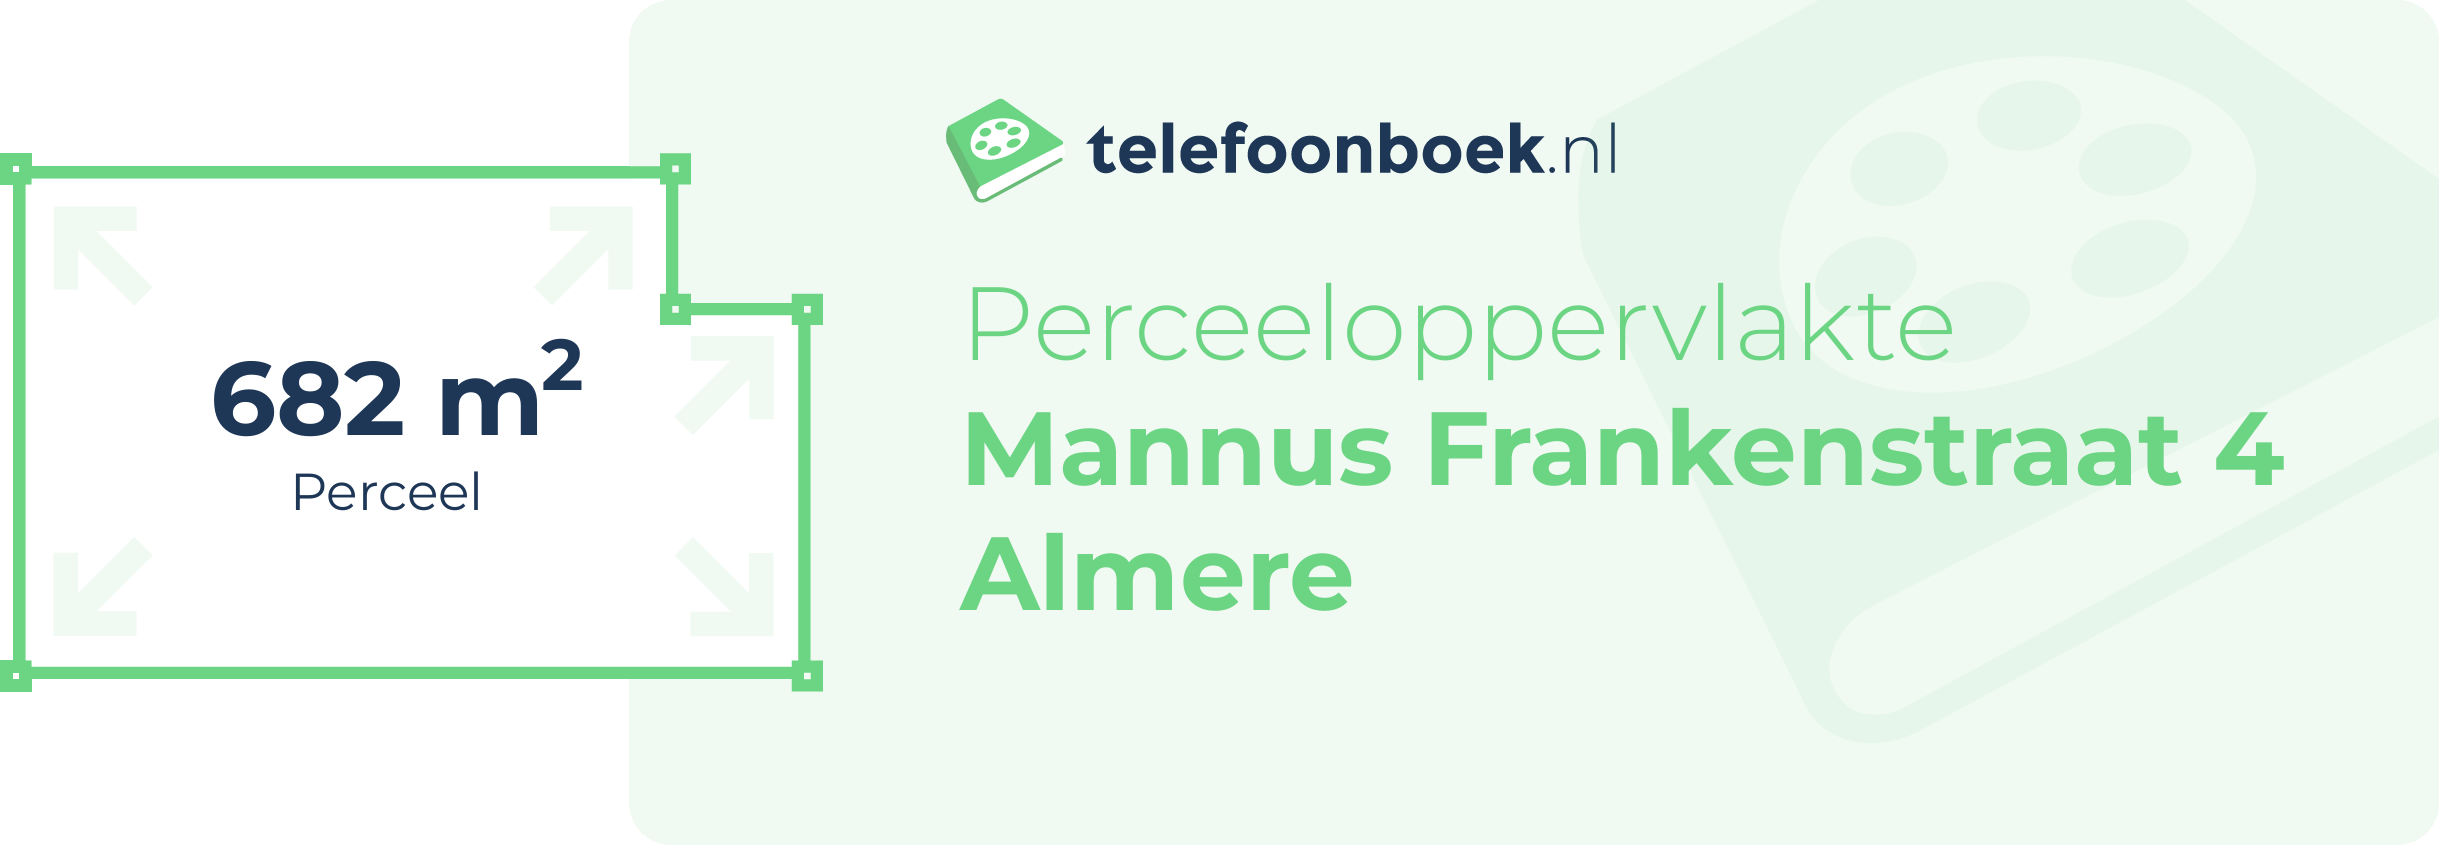 Perceeloppervlakte Mannus Frankenstraat 4 Almere